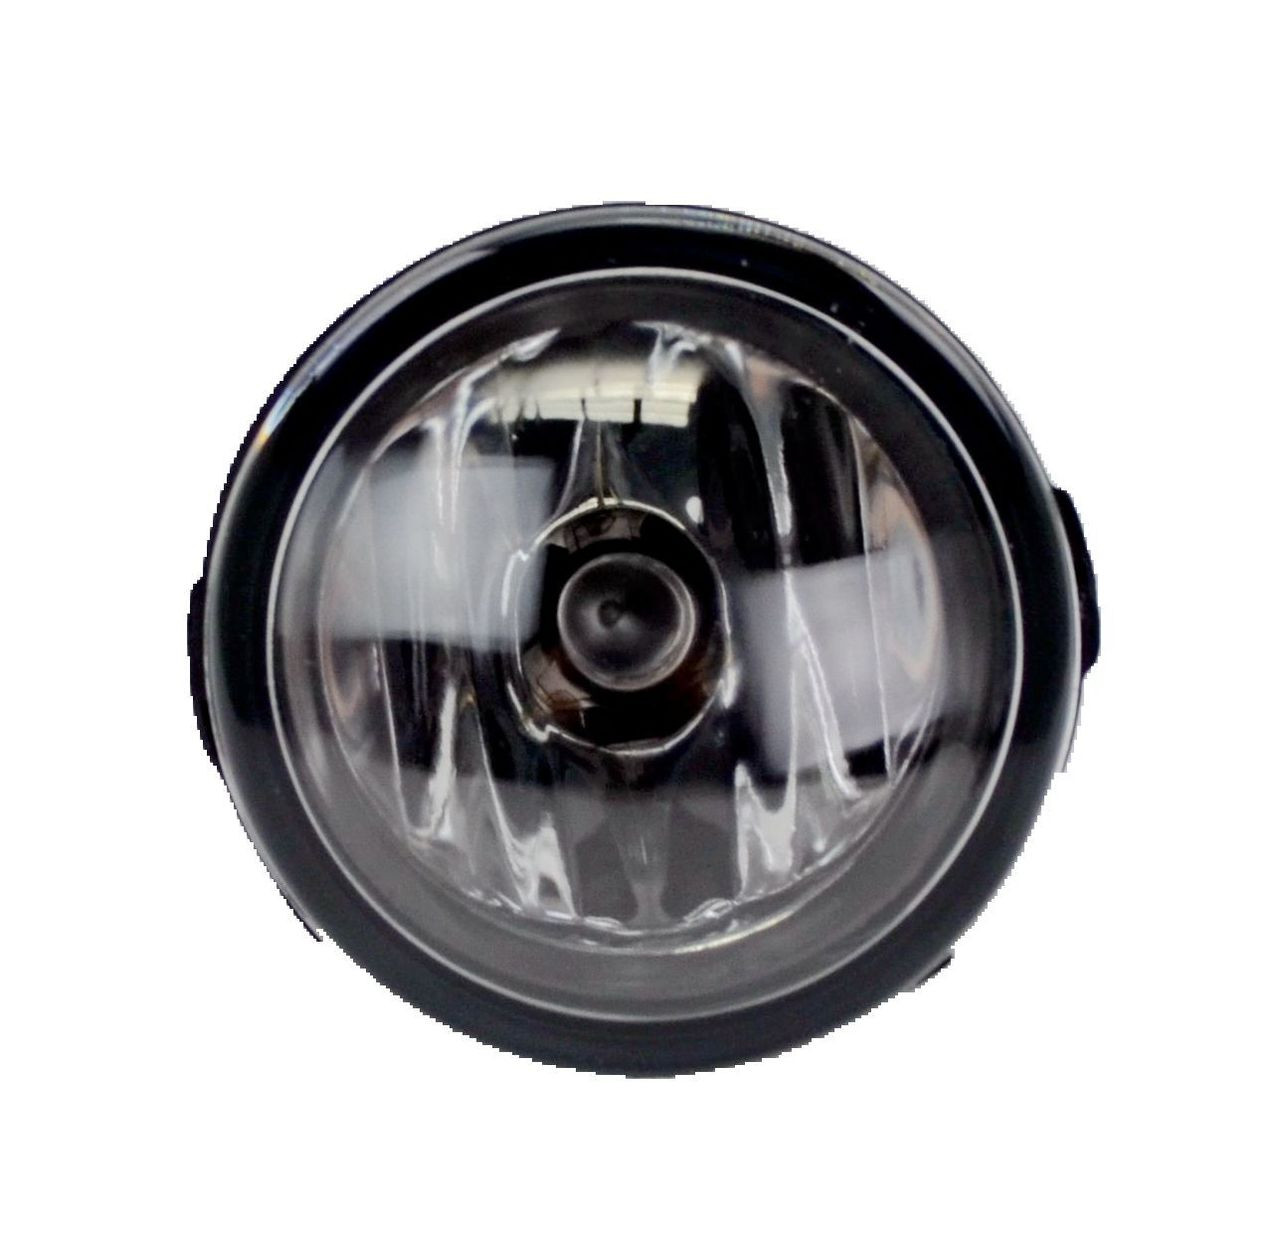 Fog light for Nissan Tiida C11 02/06-12/09 New Left LHS Spot Lamp 06 07 08 09